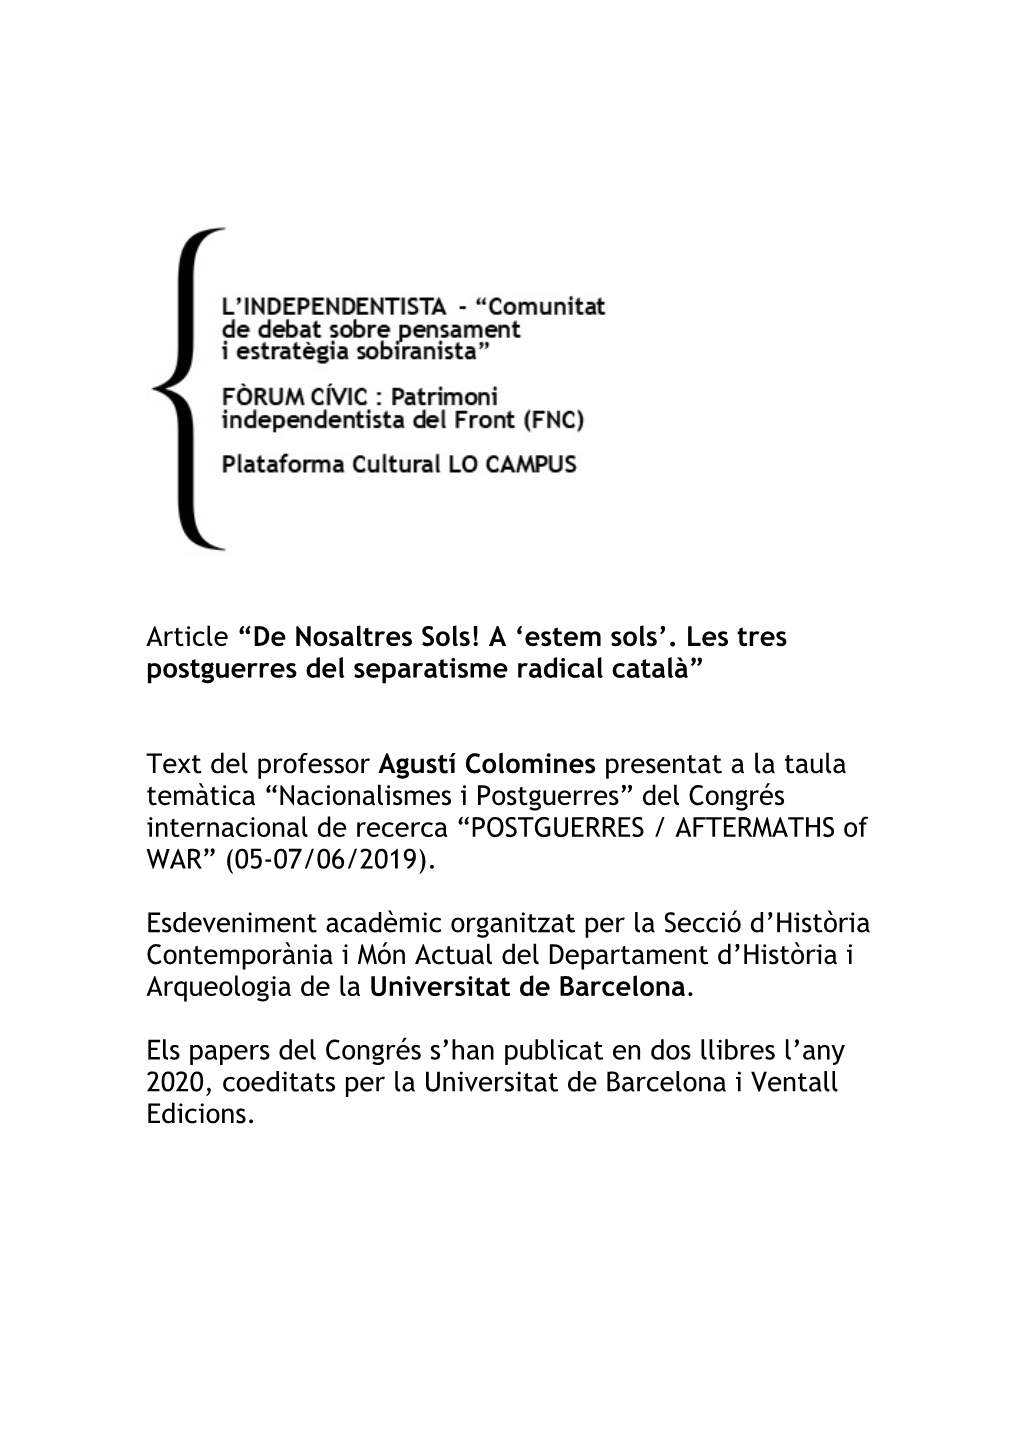 Agustí Colomines Presentat a La Taula Temàtica “Nacionalismes I Postguerres” Del Congrés Internacional De Recerca “POSTGUERRES / AFTERMATHS of WAR” (05-07/06/2019)